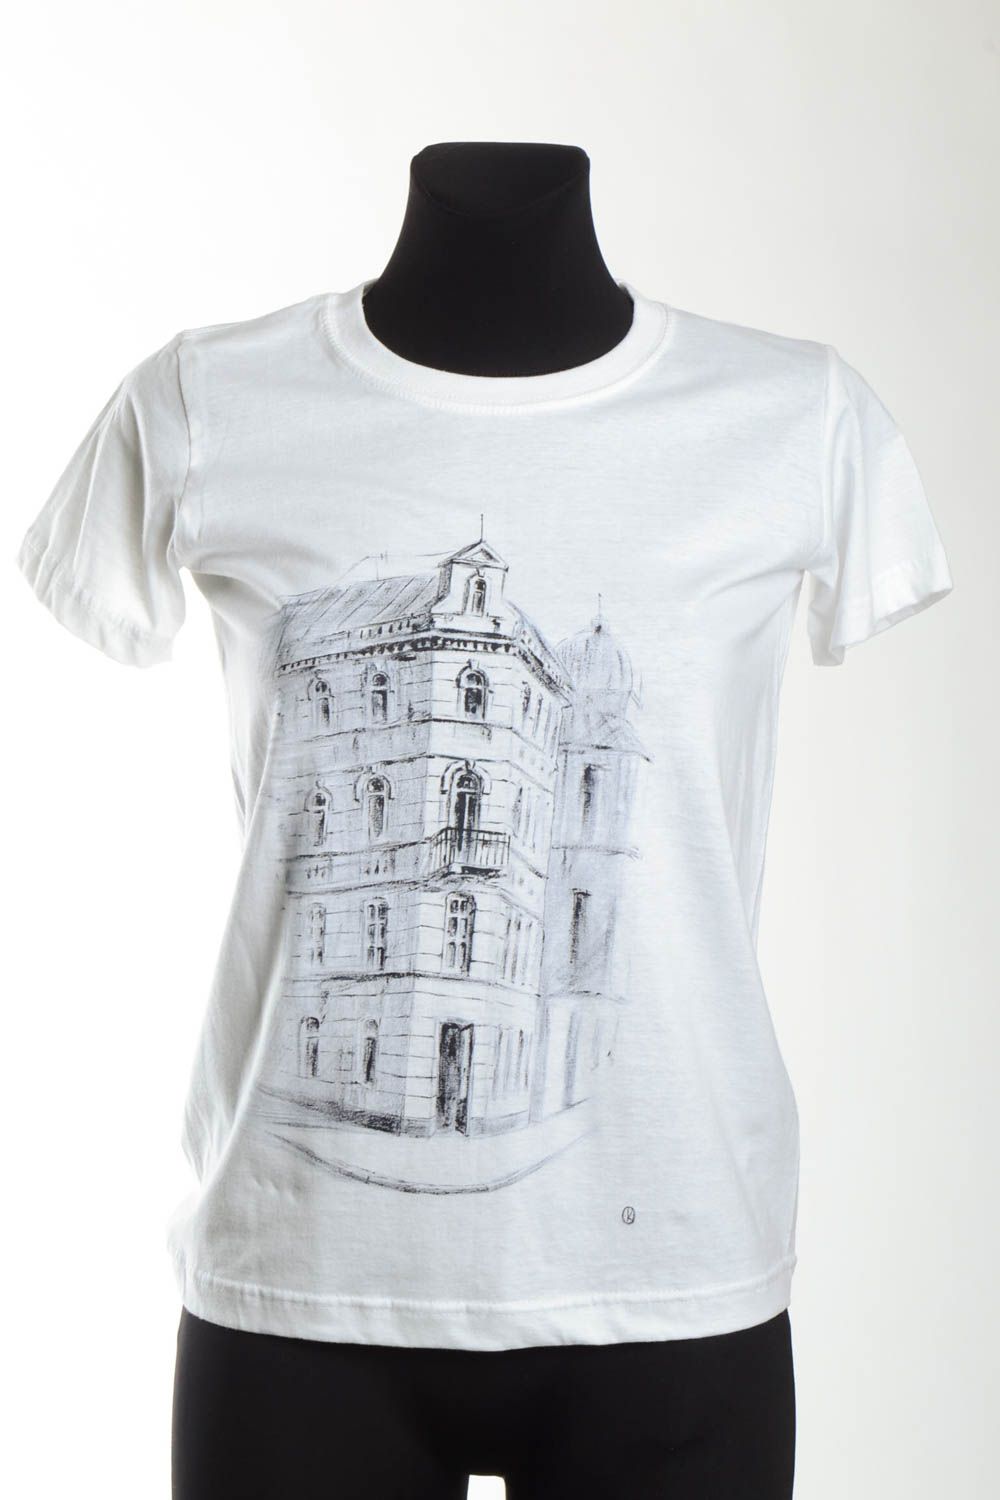 Белая футболка ручной работы женская одежда футболка с рисунком авторским фото 2